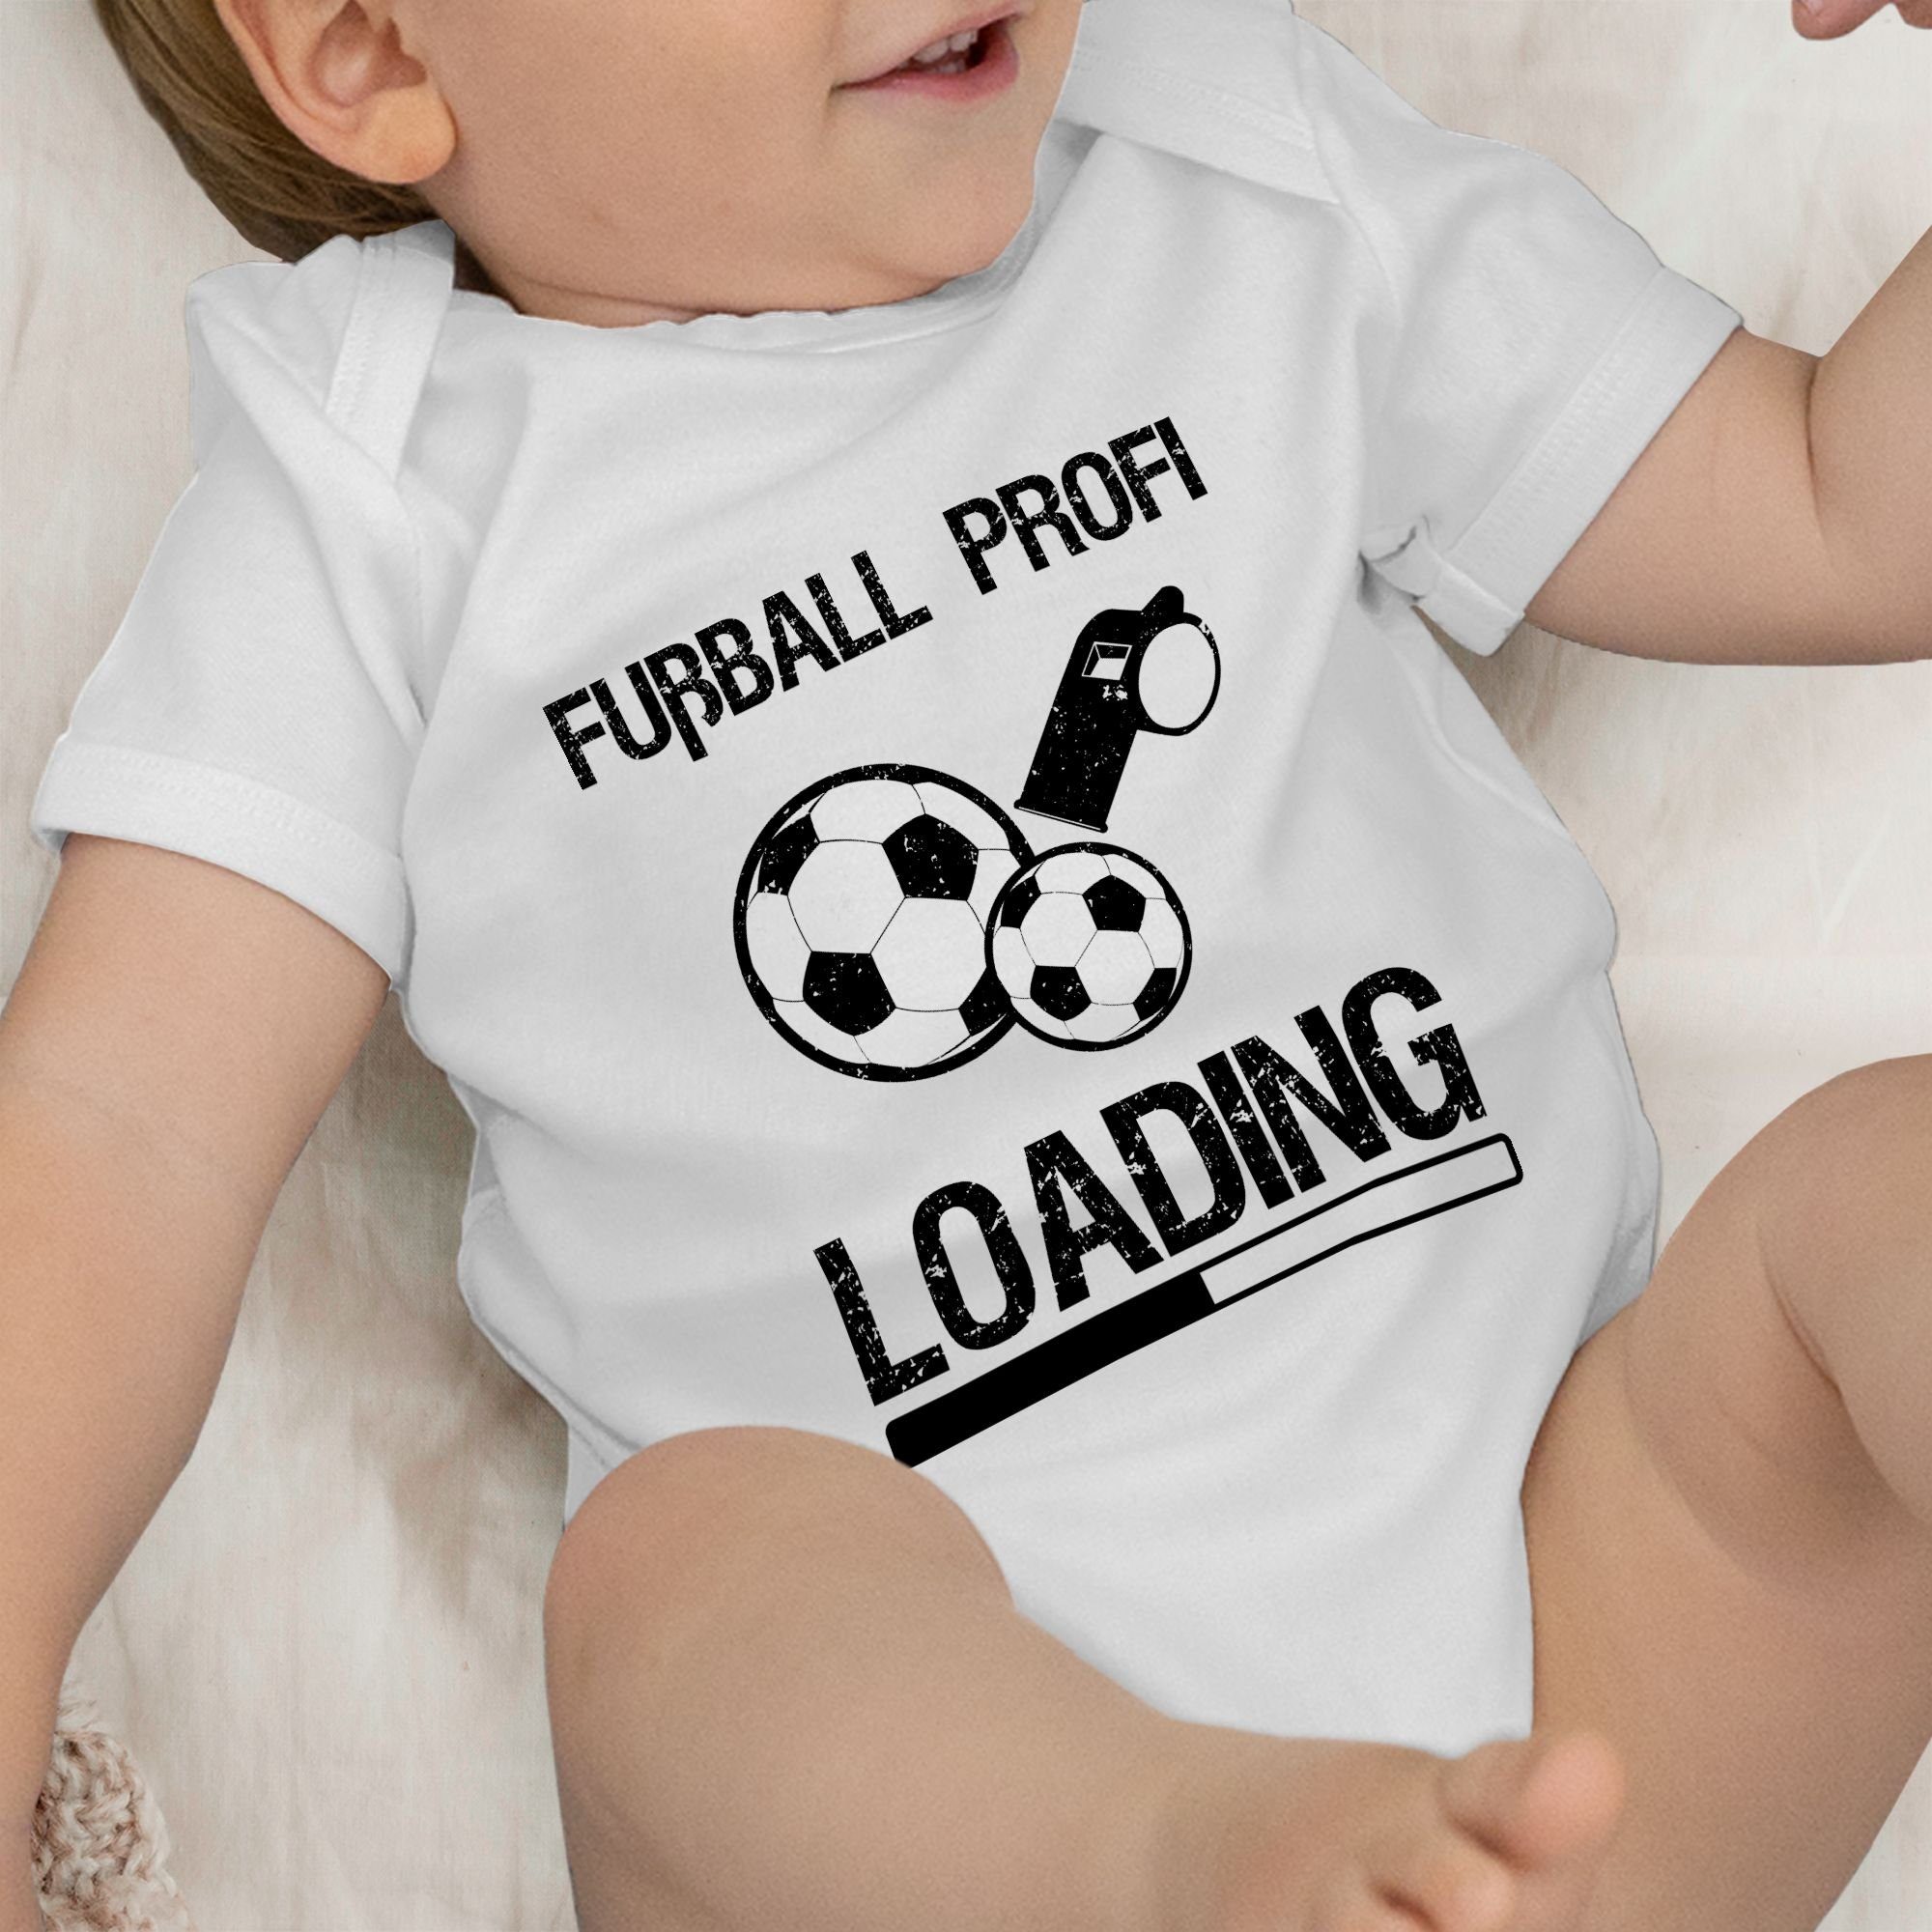 Loading Weiß Shirtbody Fußball - Sport Profi 1 Baby schwarz & Vintage Bewegung Shirtracer